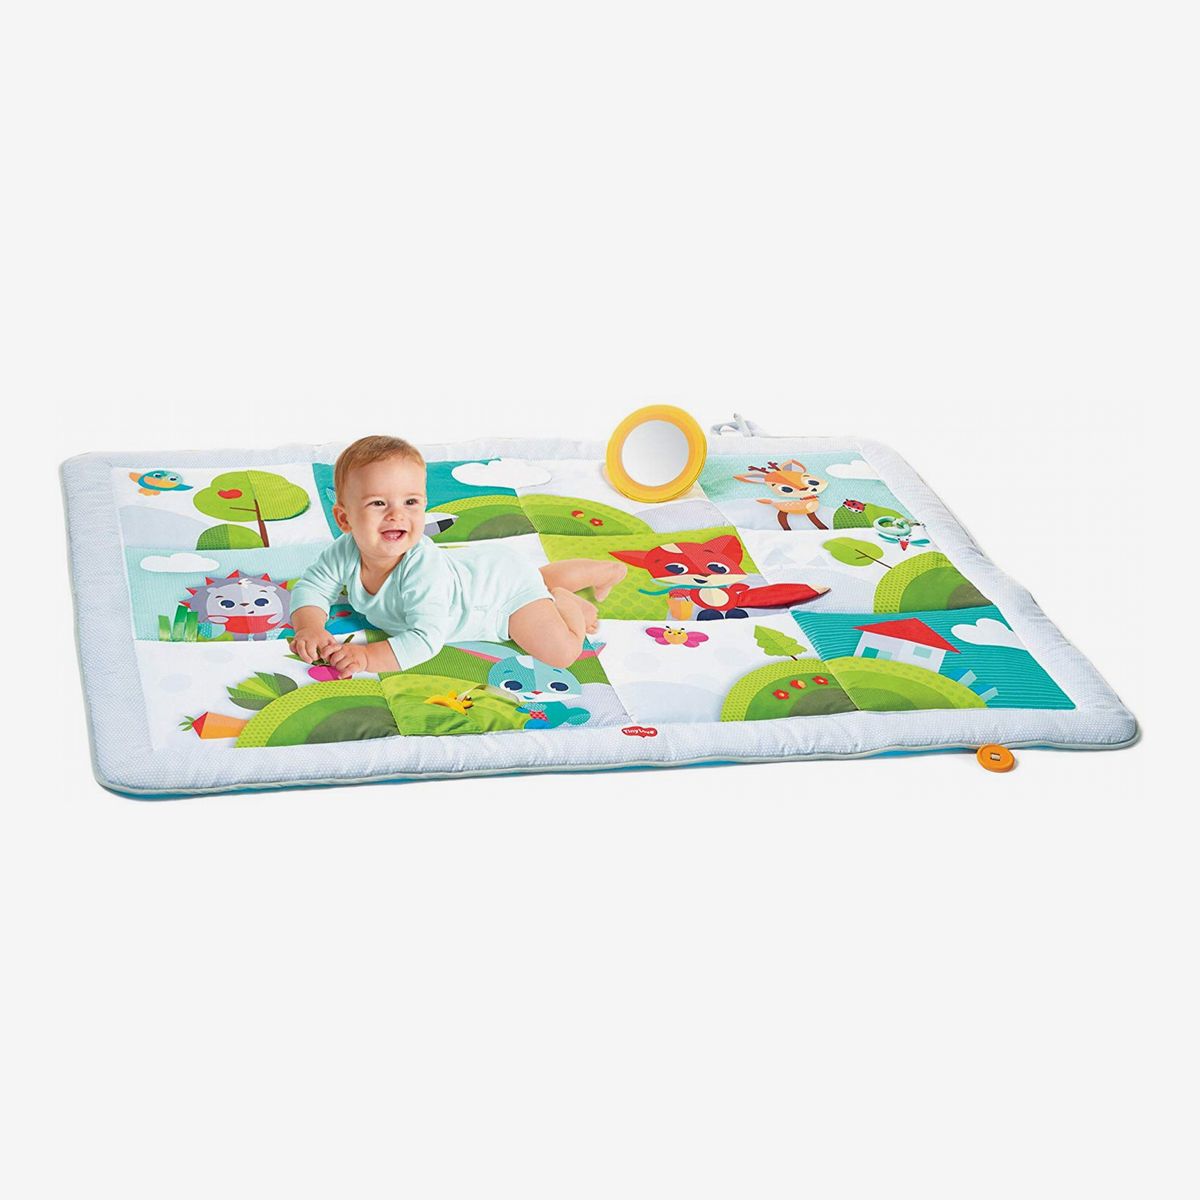 Best Play Mats And Floor For Kids, Best Foam Floor Tiles For Babies